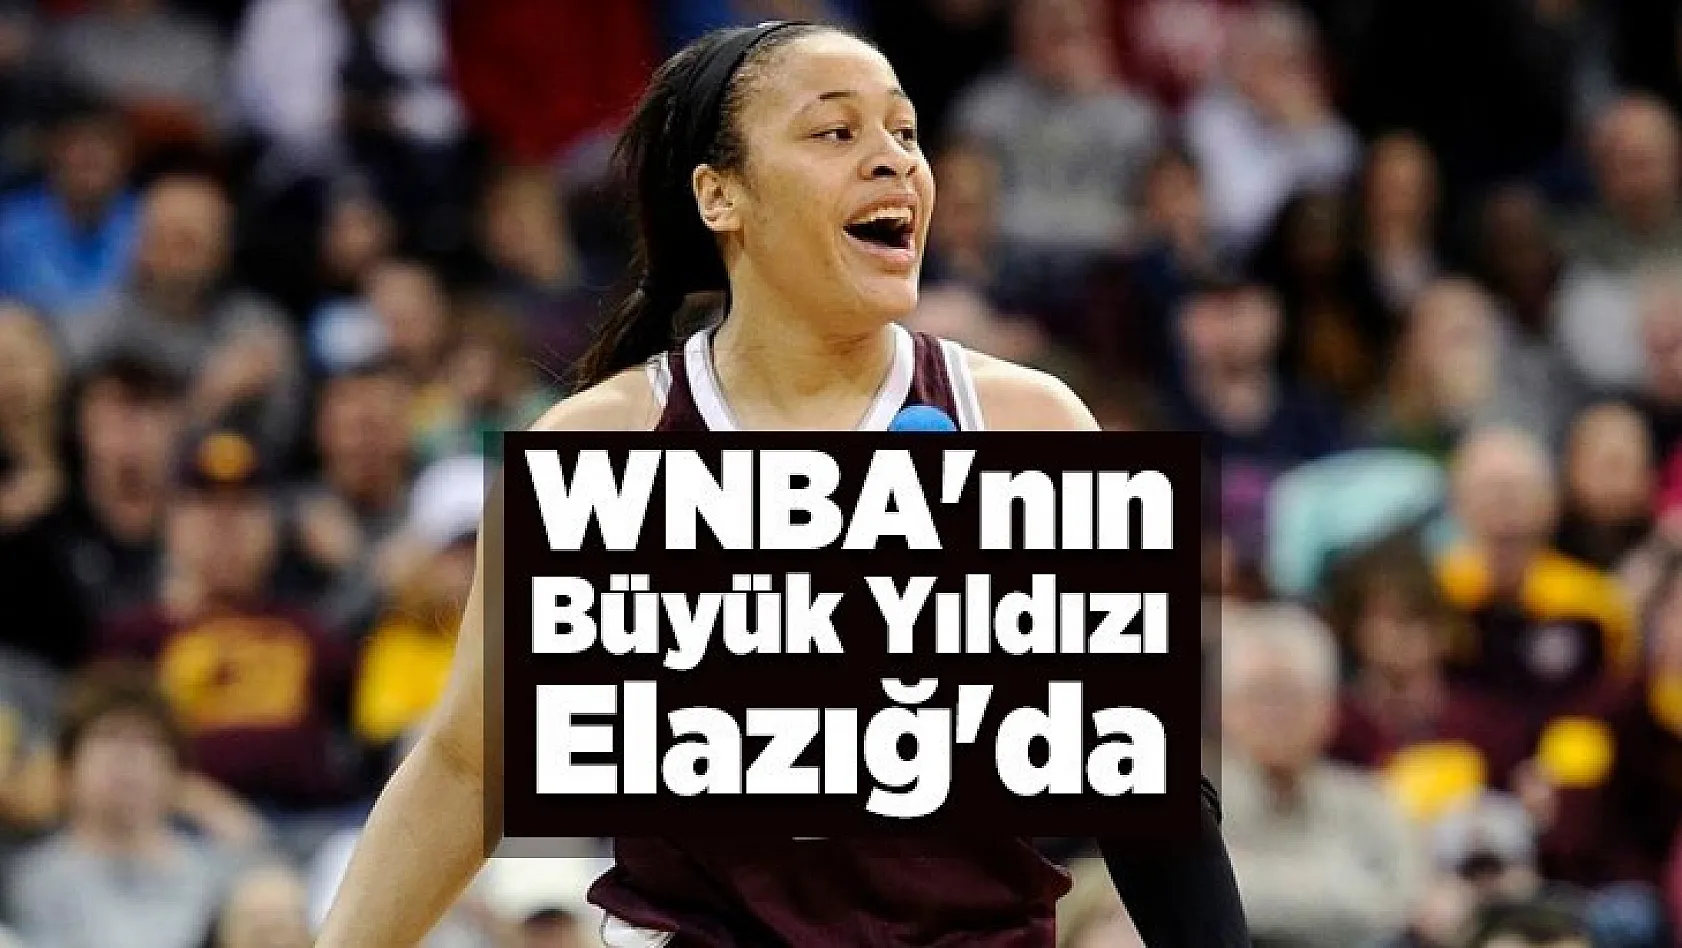 WNBA'nın Büyük Yıldızı Elazığ'da